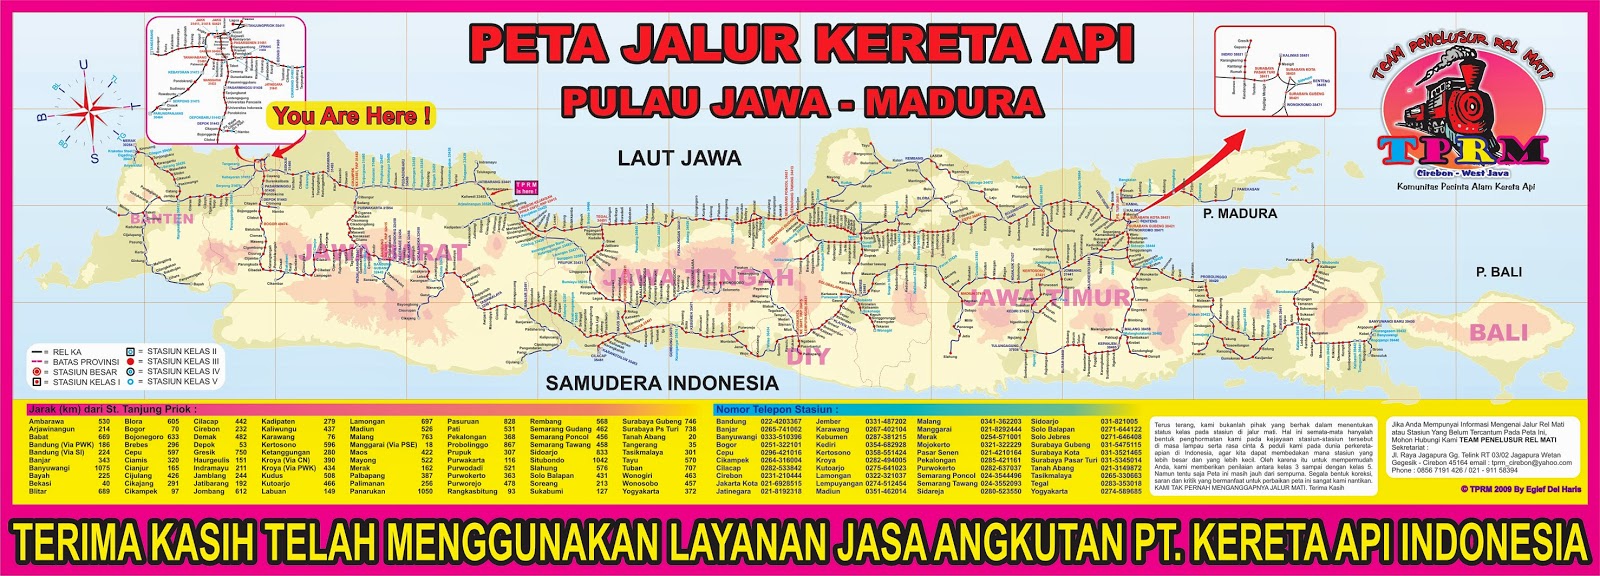 Memoar Anak Negeri Jadwal Kereta Api Dari dan Ke Malang per 1 Juni 2014